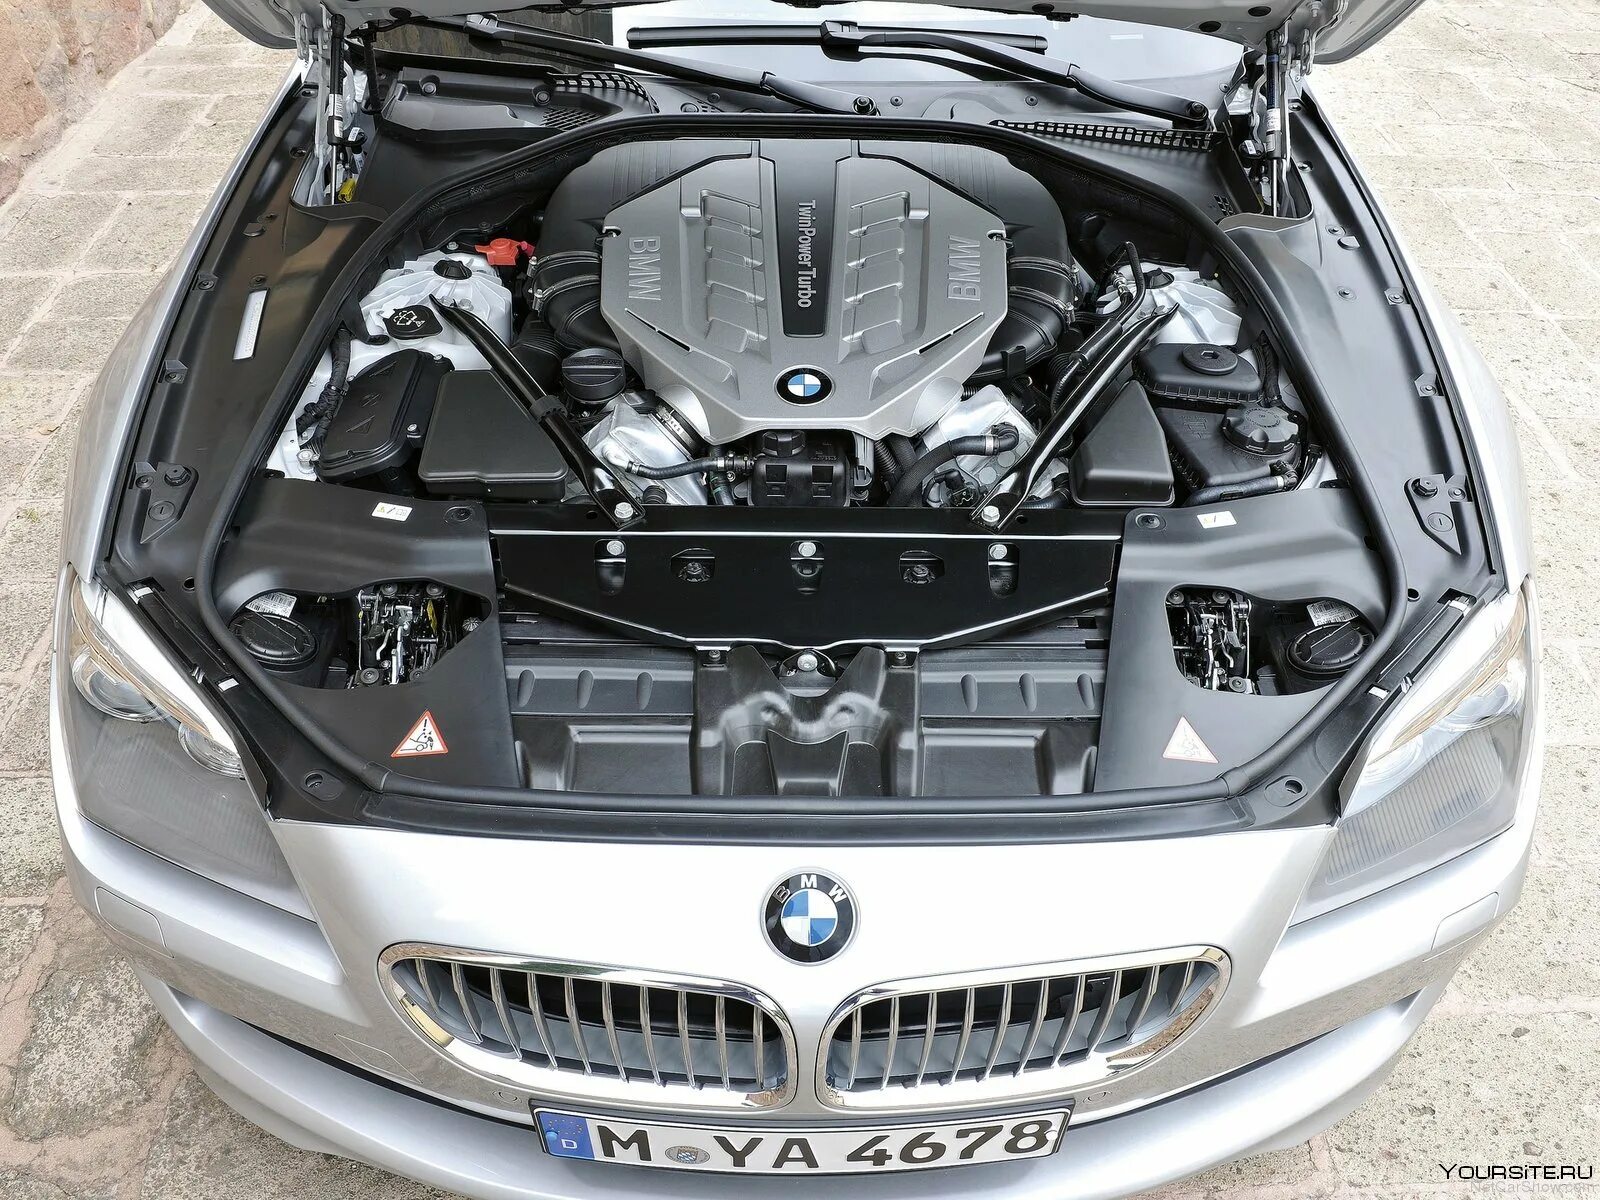 Двигатель BMW 650i. БМВ 650 f06 мотор. BMW f02 под капот. BMW 650i под капотом. Машина с открытым капотом